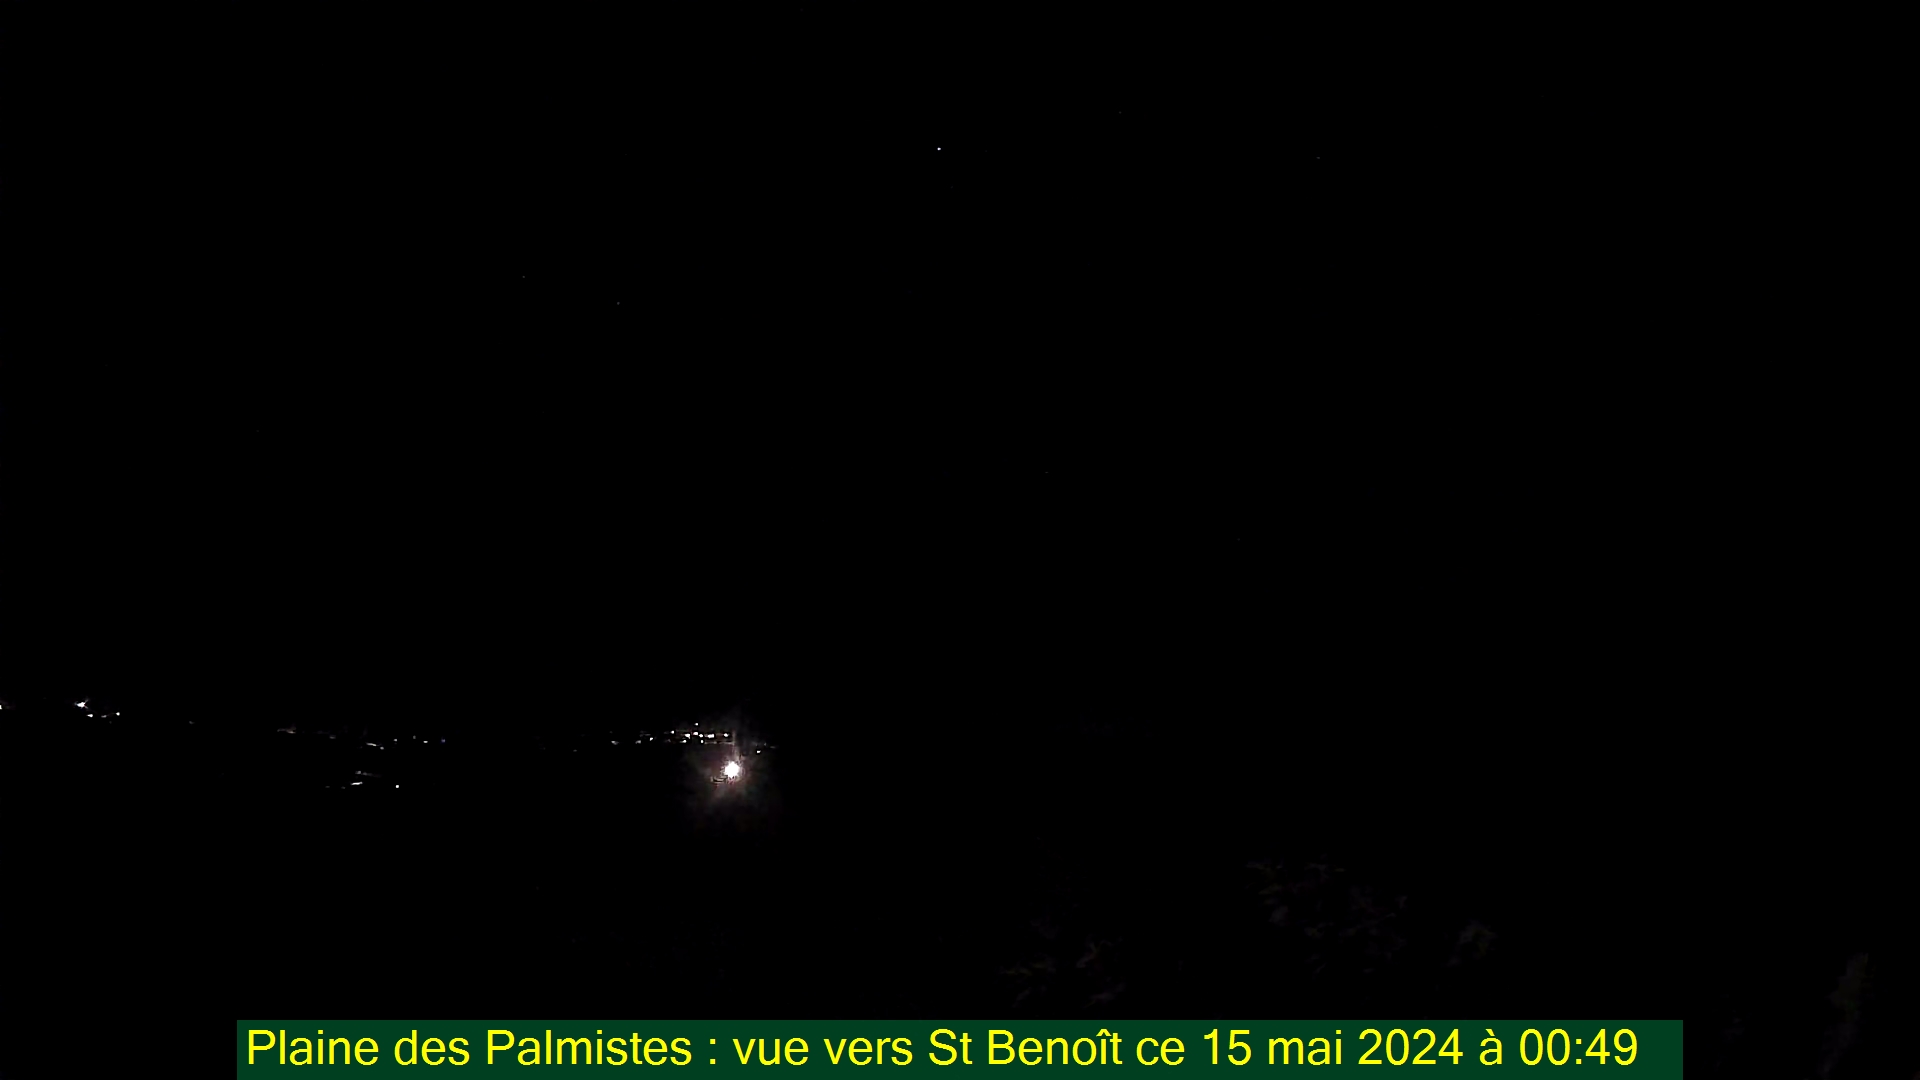 Saint-Denis (Réunion) Fr. 00:50